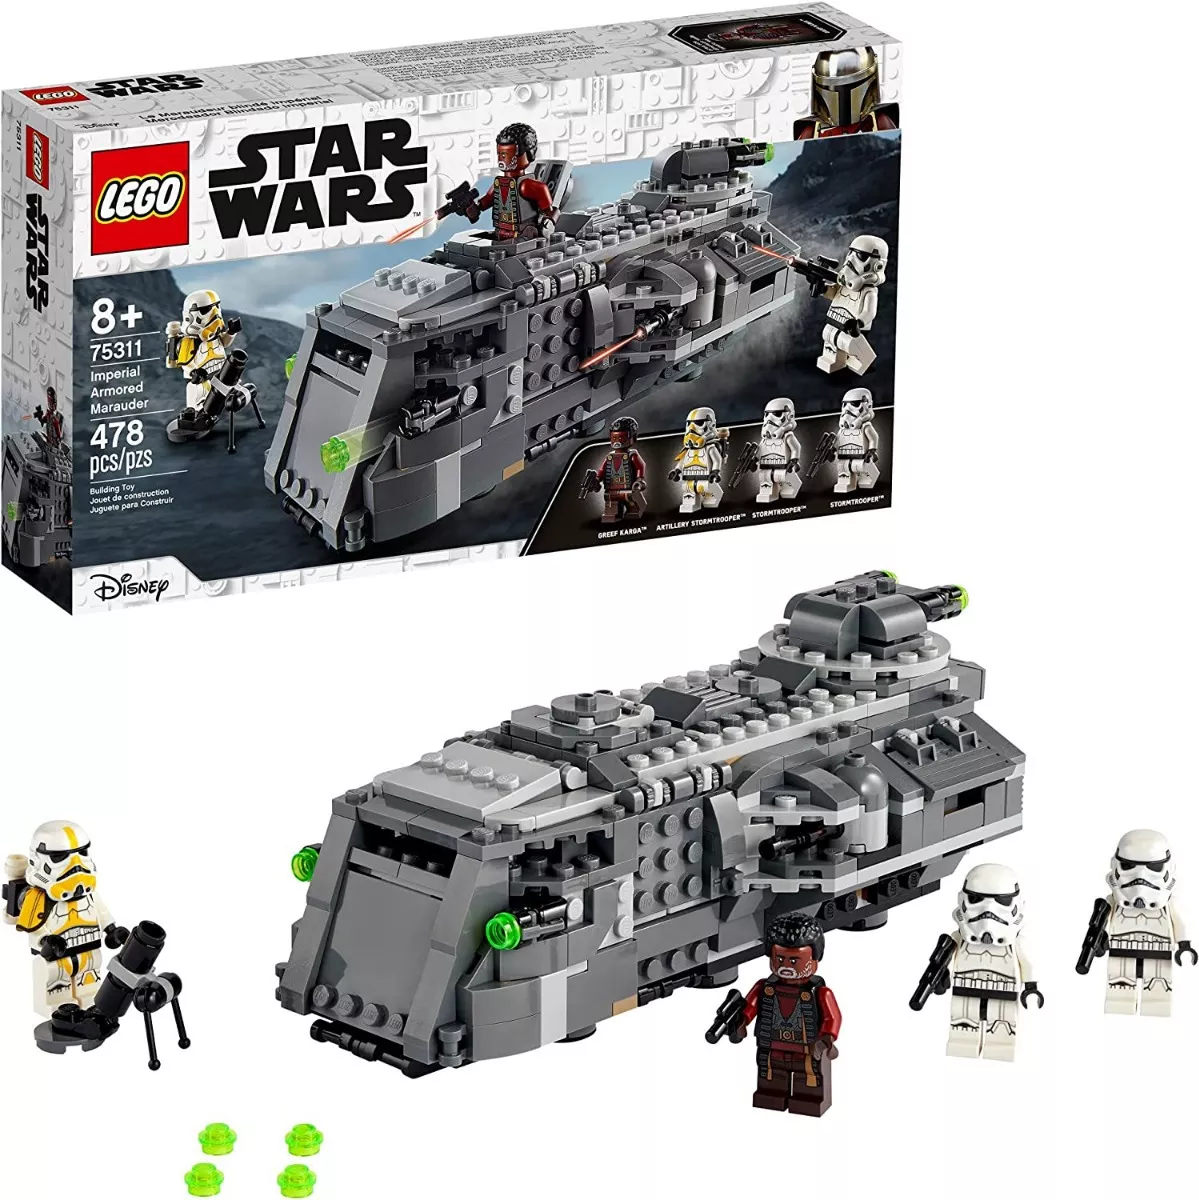 Lego Star Wars 75311 Imperial Armored Marauder